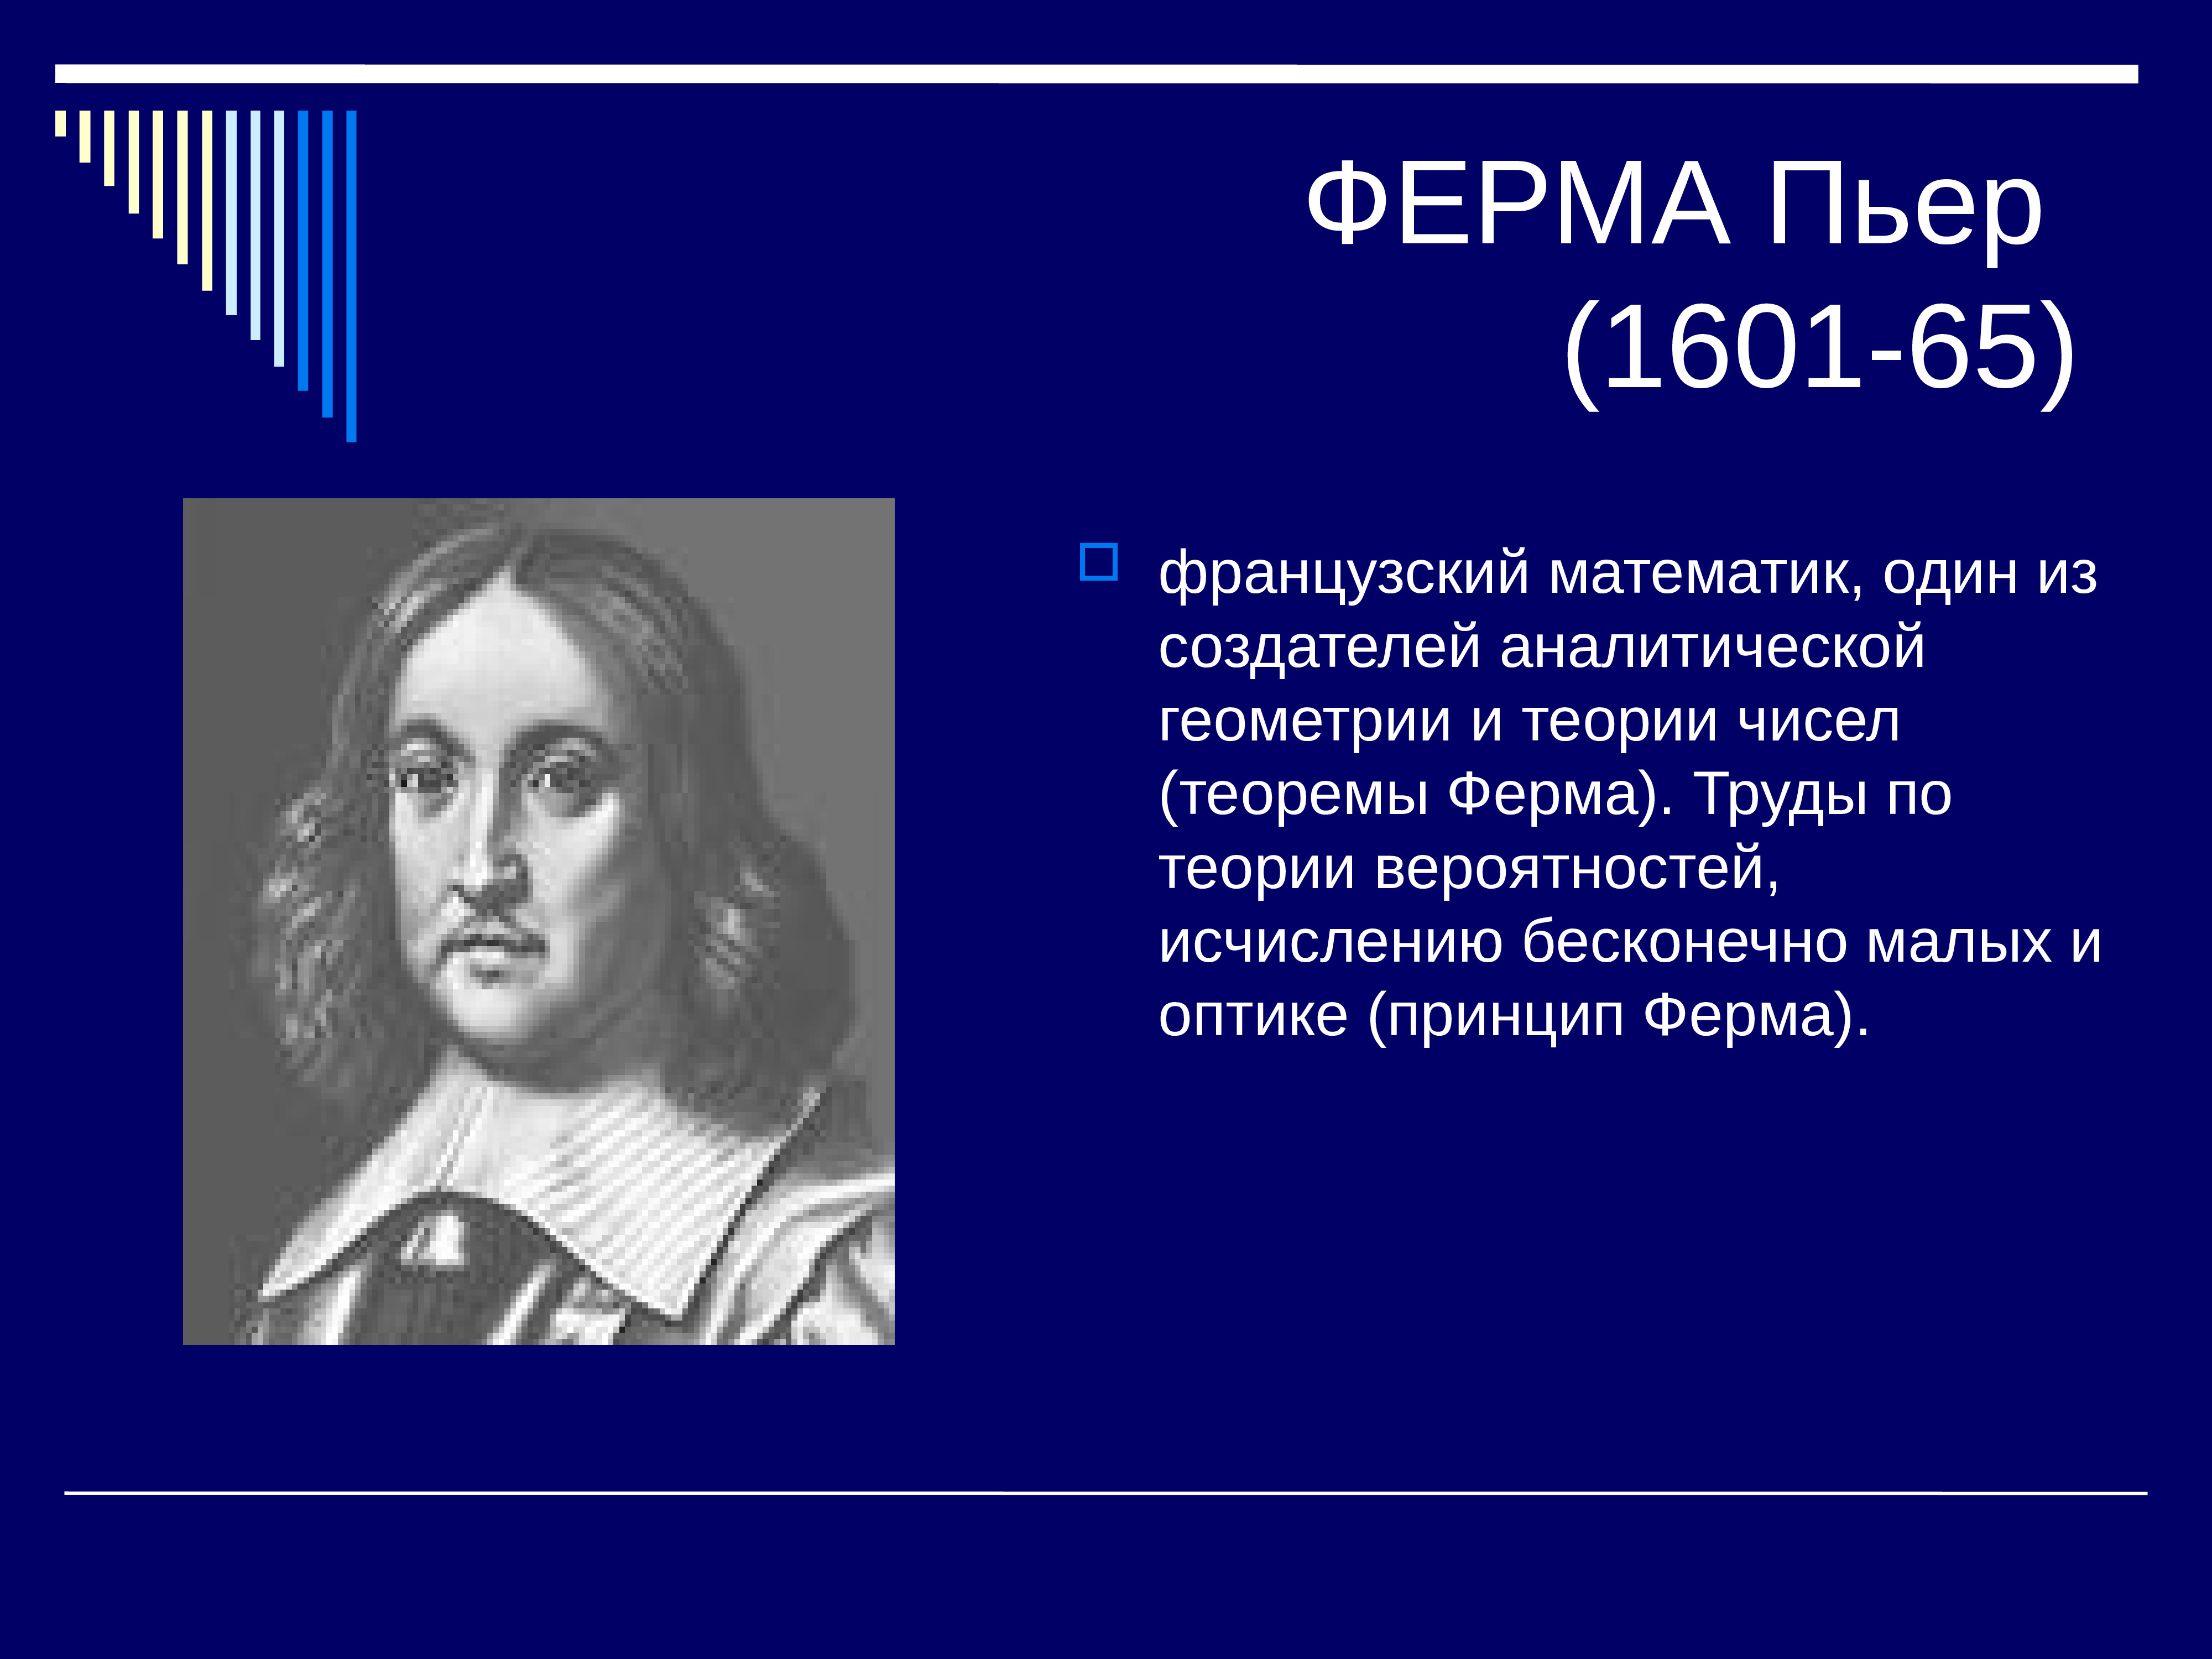 4 великих математика. Пьер ферма (1601-1665). Великие математики. Известные ученые математики. Великий математик.